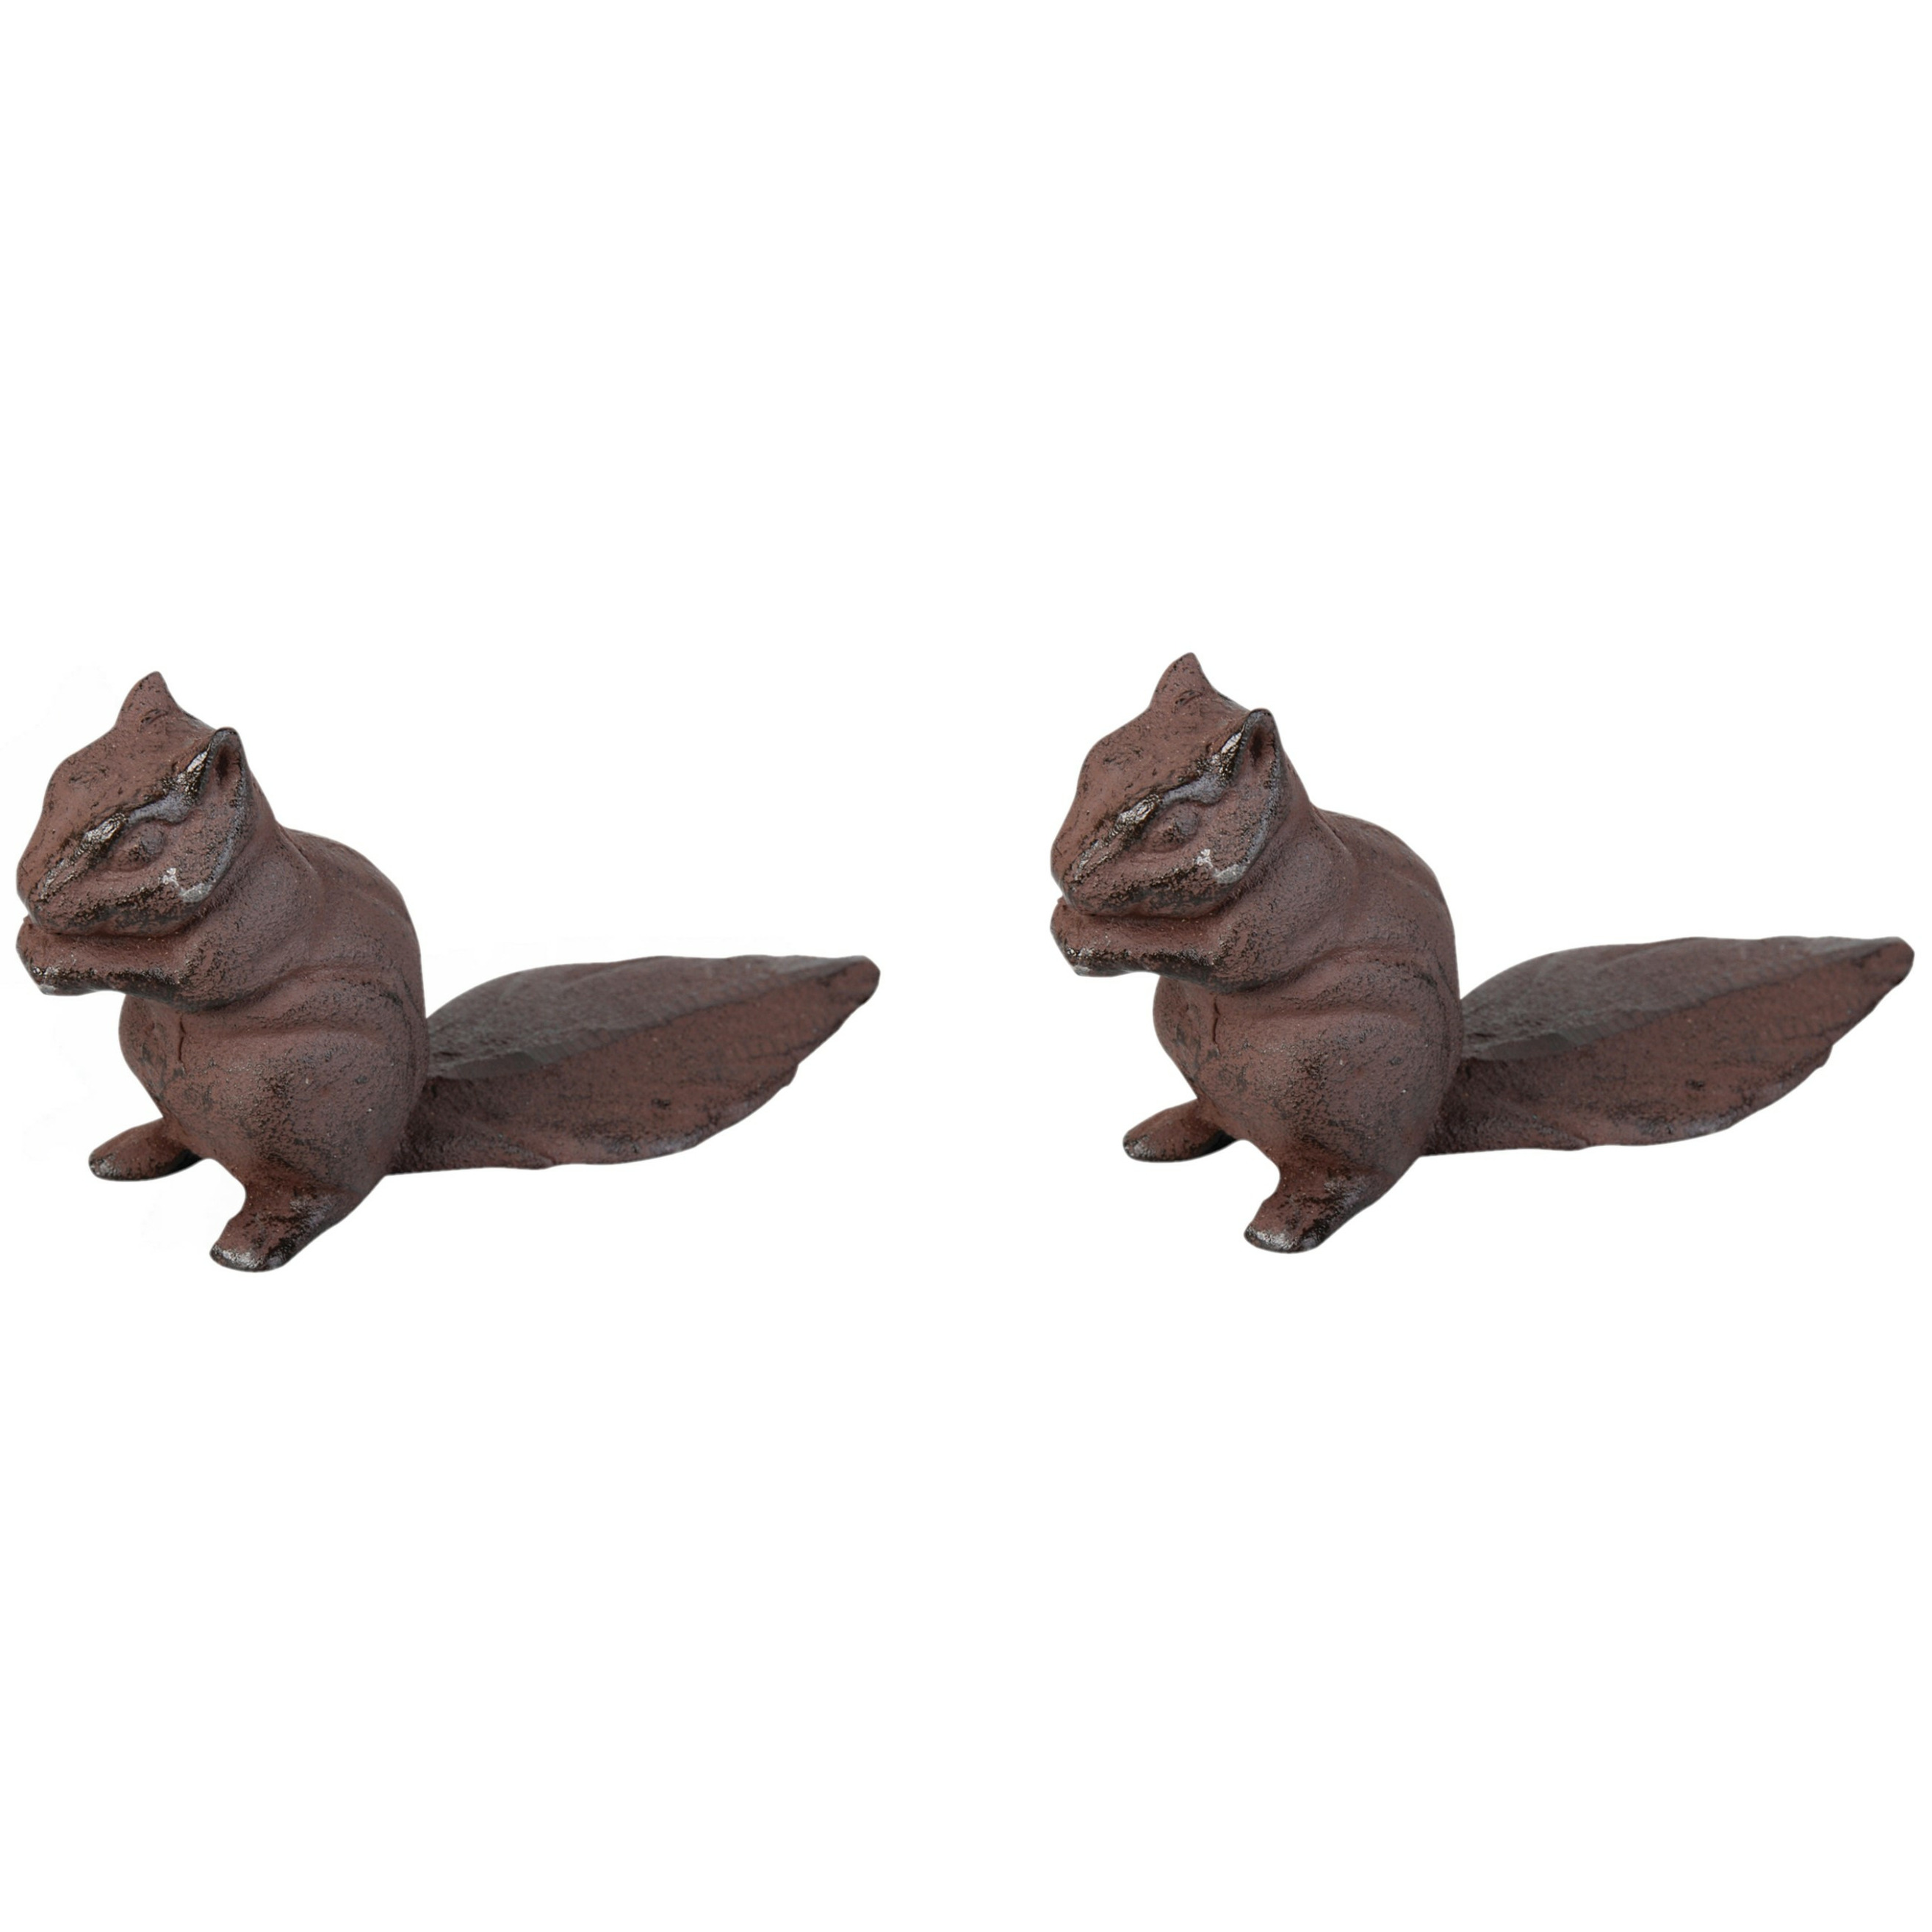 Deurstopper eekhoorn 2x 0.6 kg gietijzer bruin 18 x 6 x 10 cm